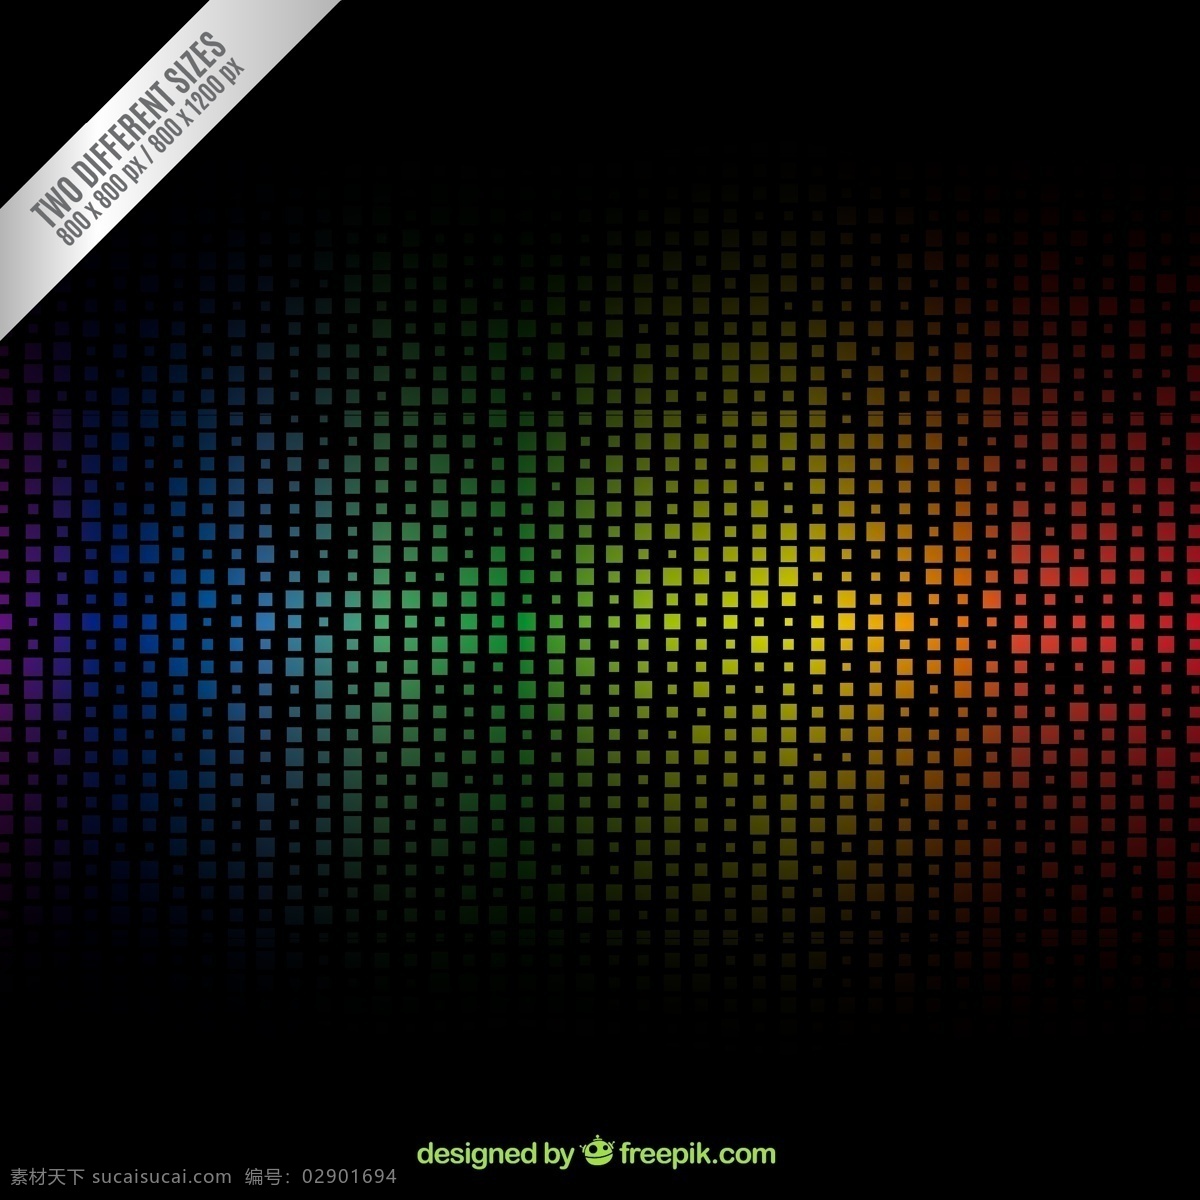 彩色 方格 背景图片 方形 背景 矢量图 格式 矢量 高清图片